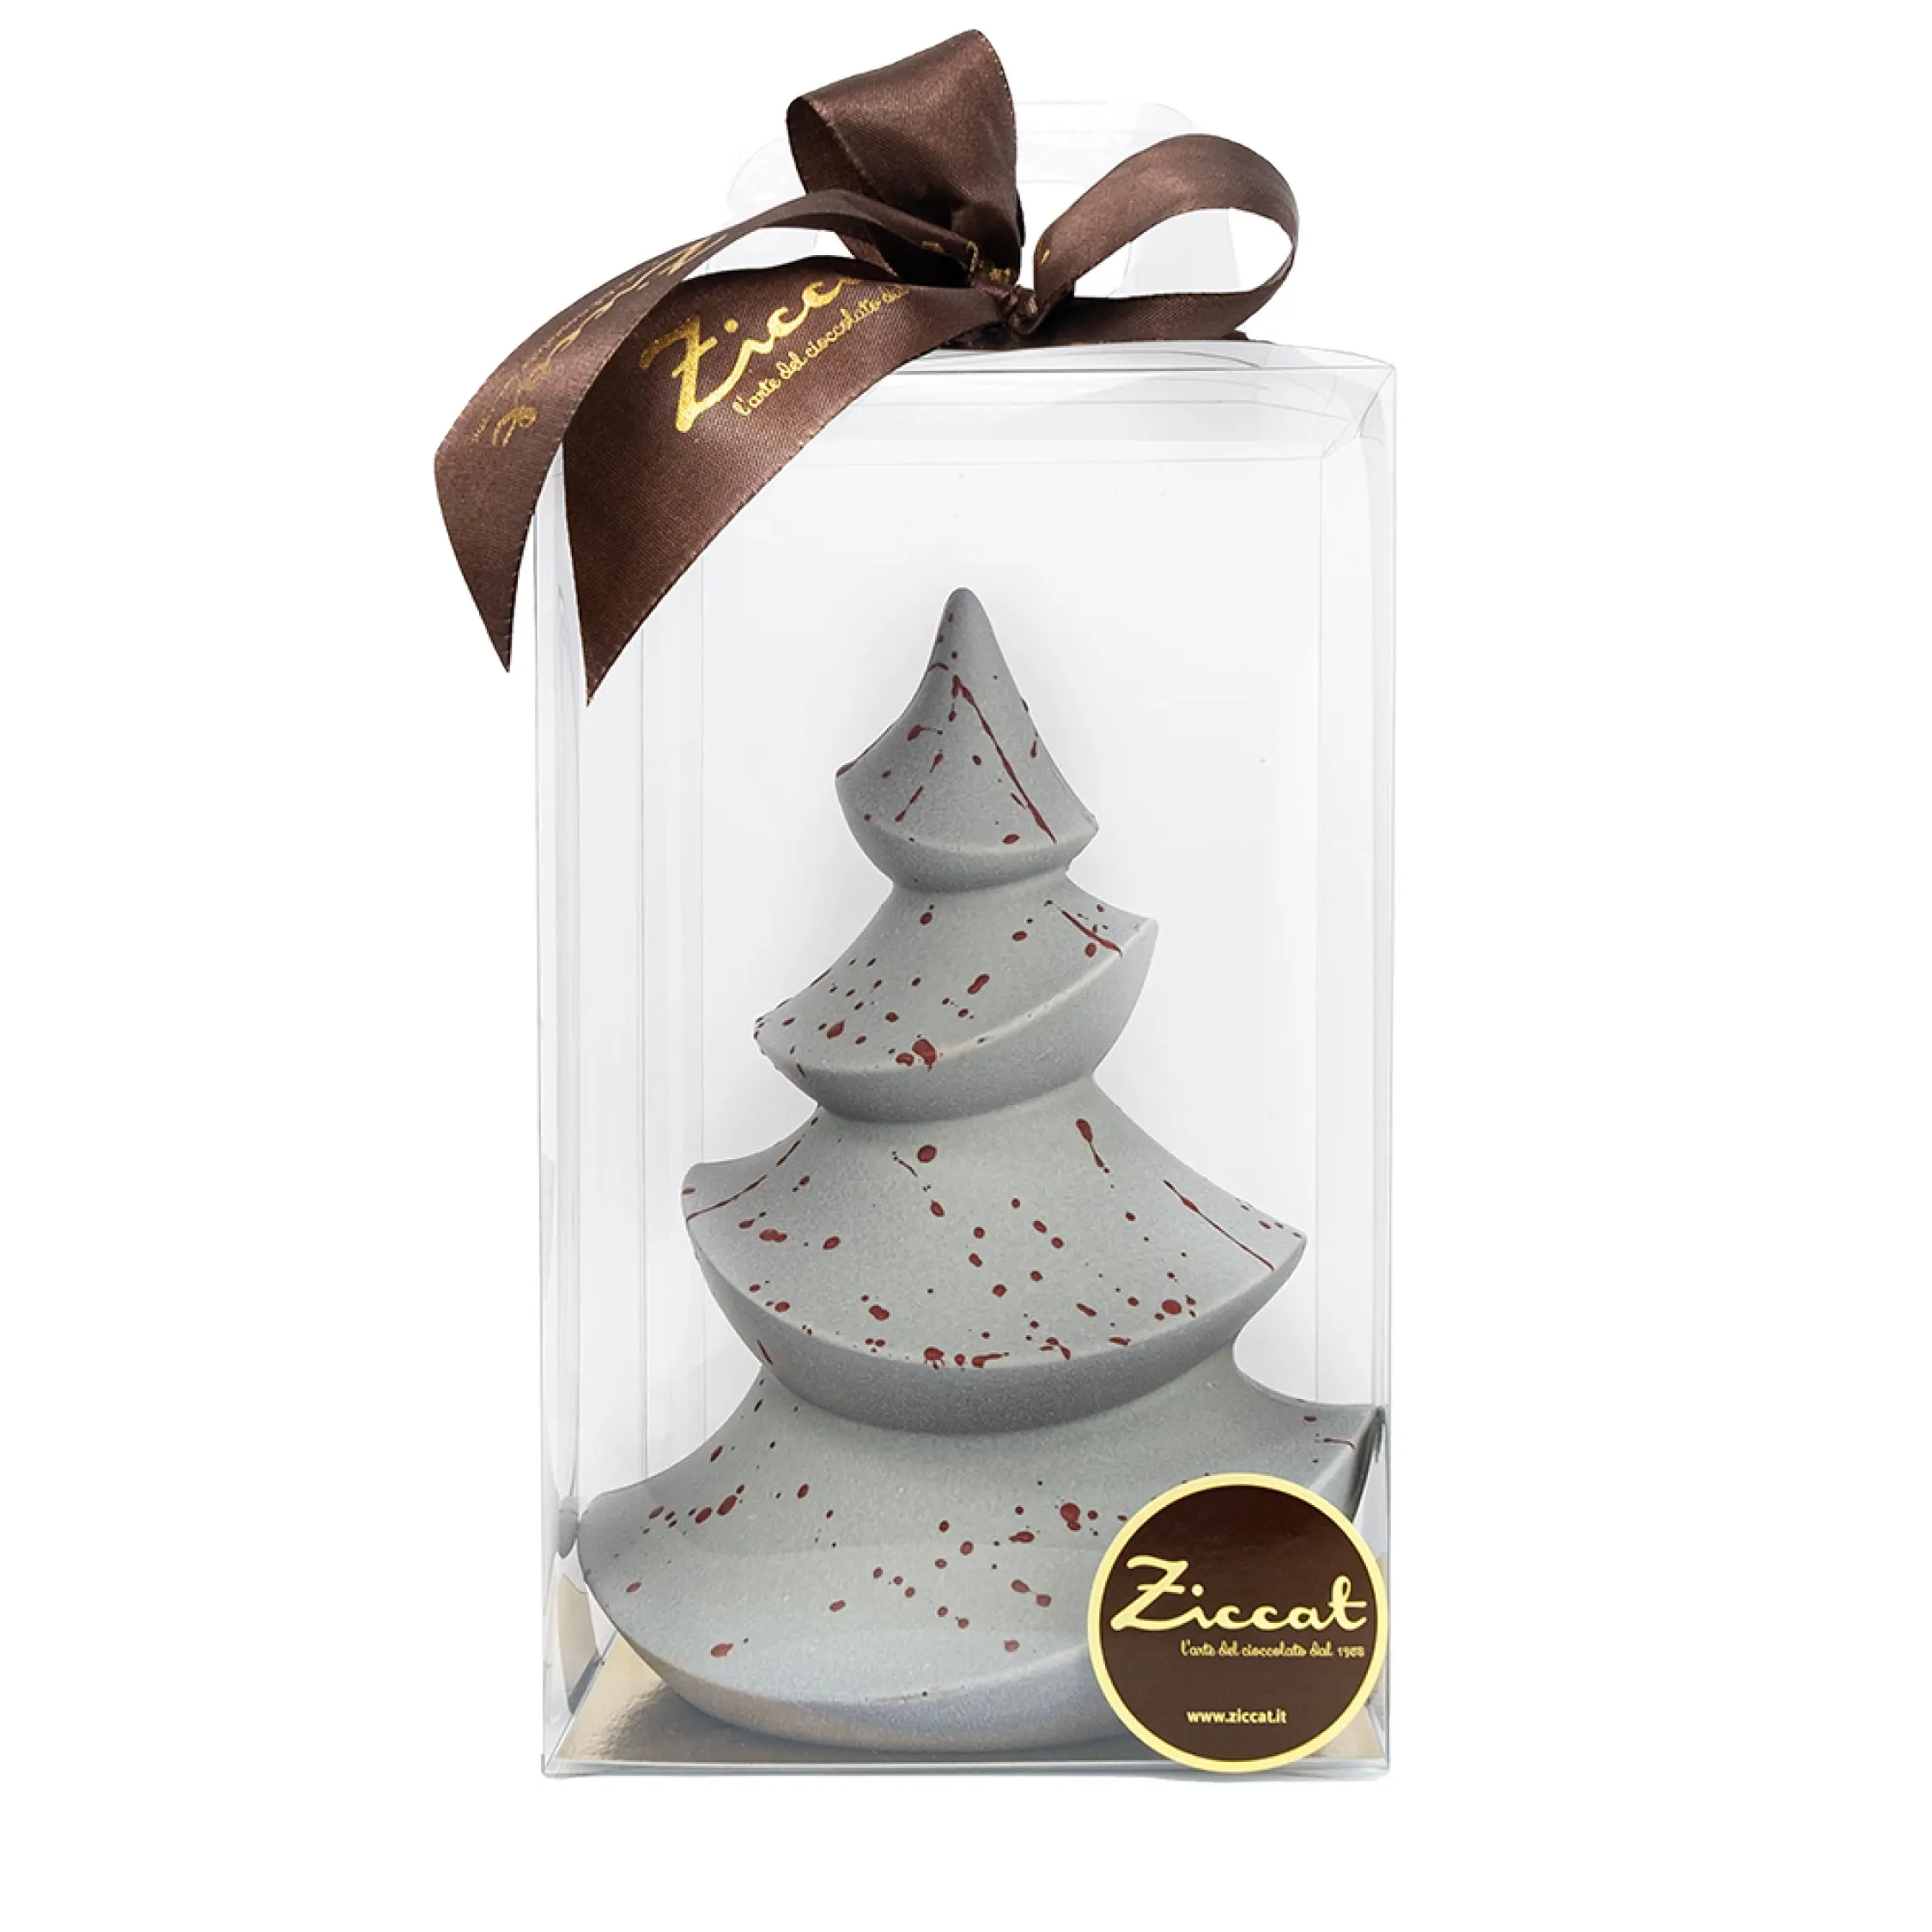 Уникальный цветной шоколадный Рождественский серебряный цвет дерева с темным шоколадом для эксклюзивного рукоделия Рождественский подарок